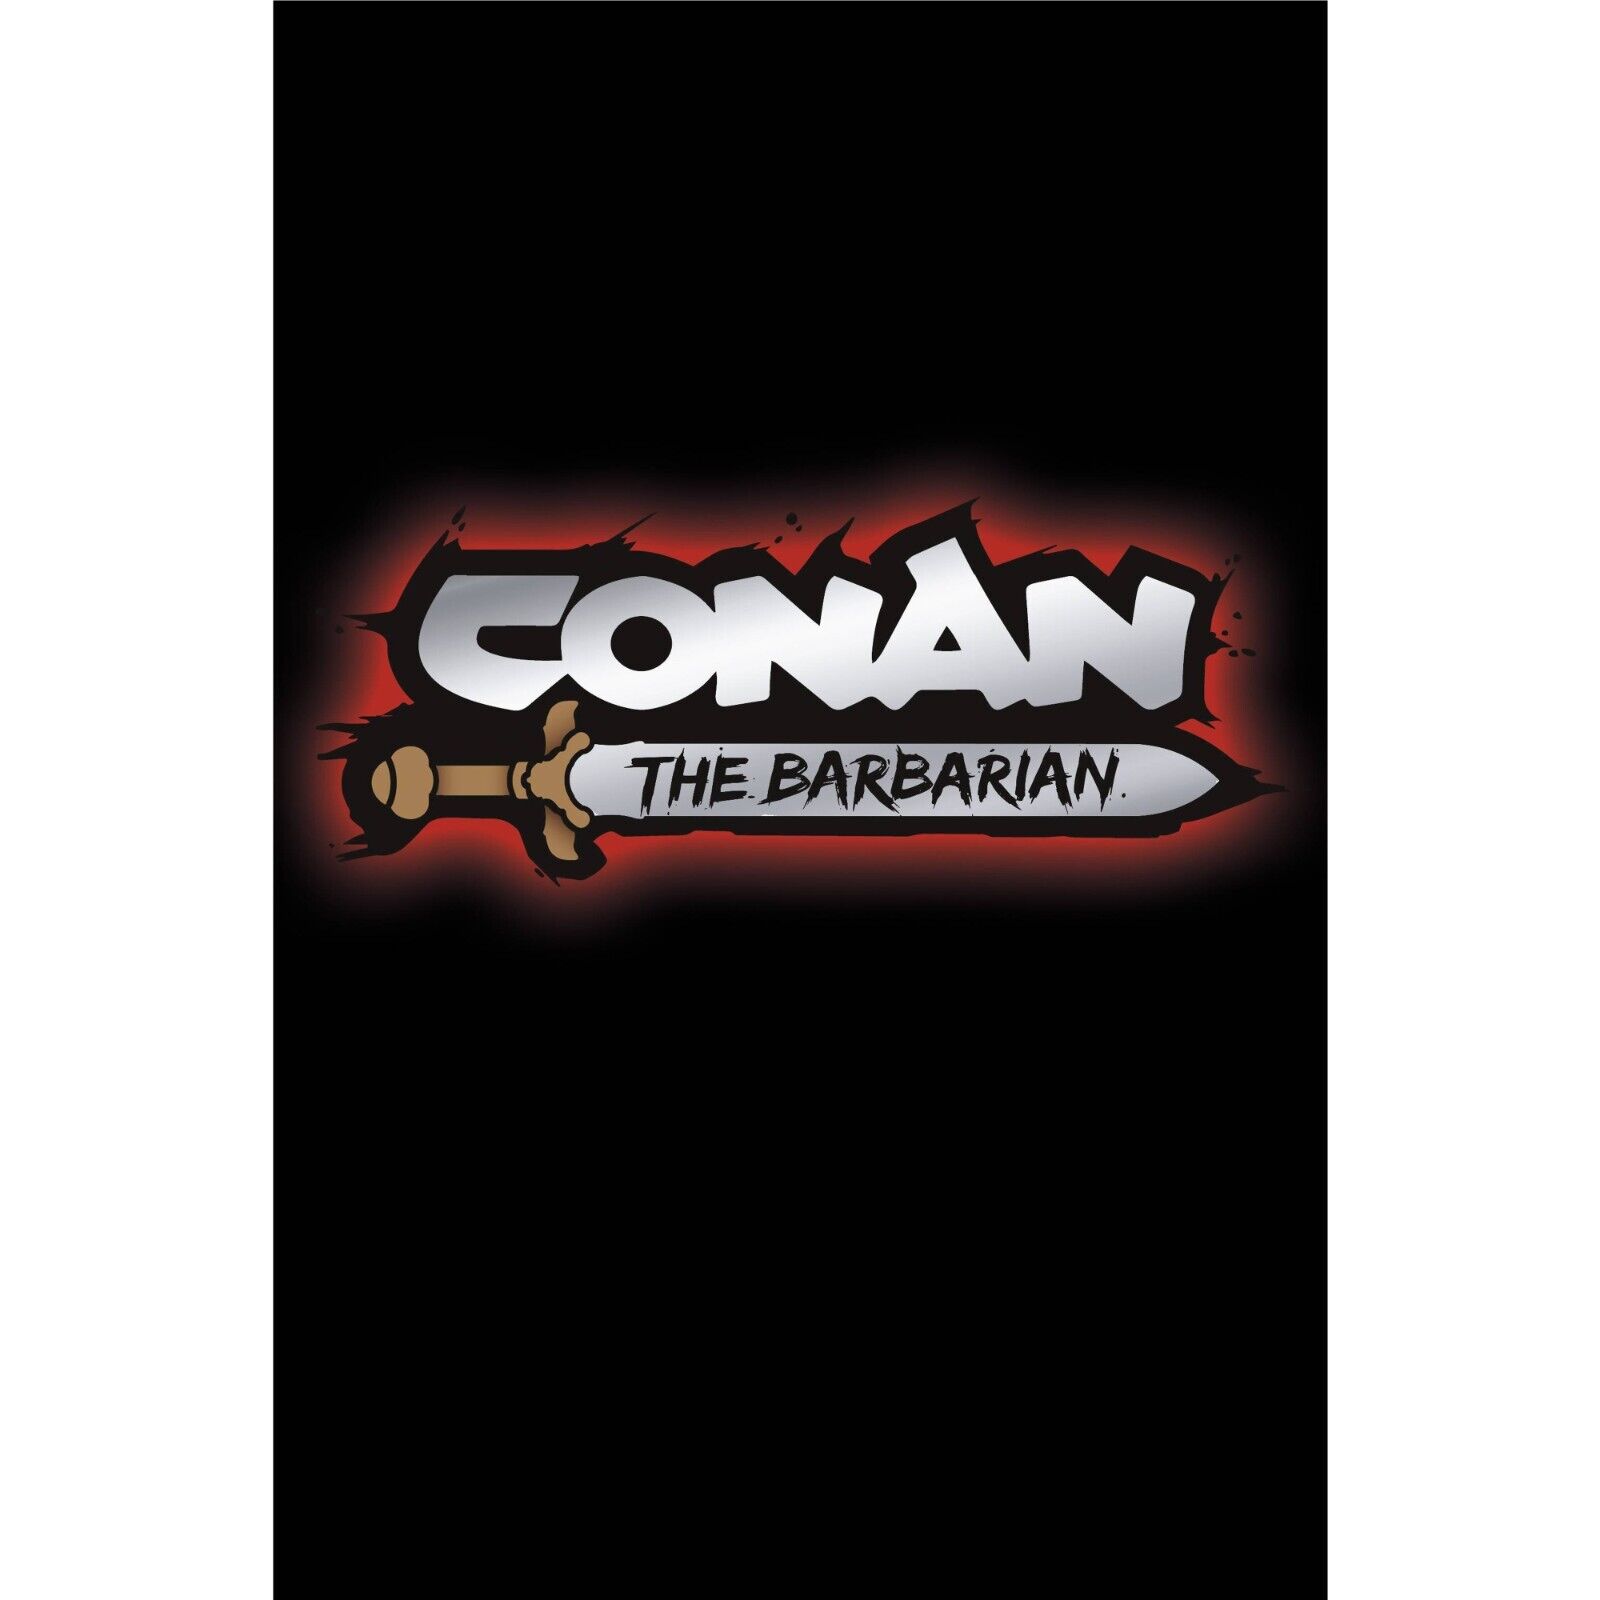 Conan the Barbarian (2023) 1 2 3 4 5 6 7 8 9 10 11 12 13 Titan COVER SELECT